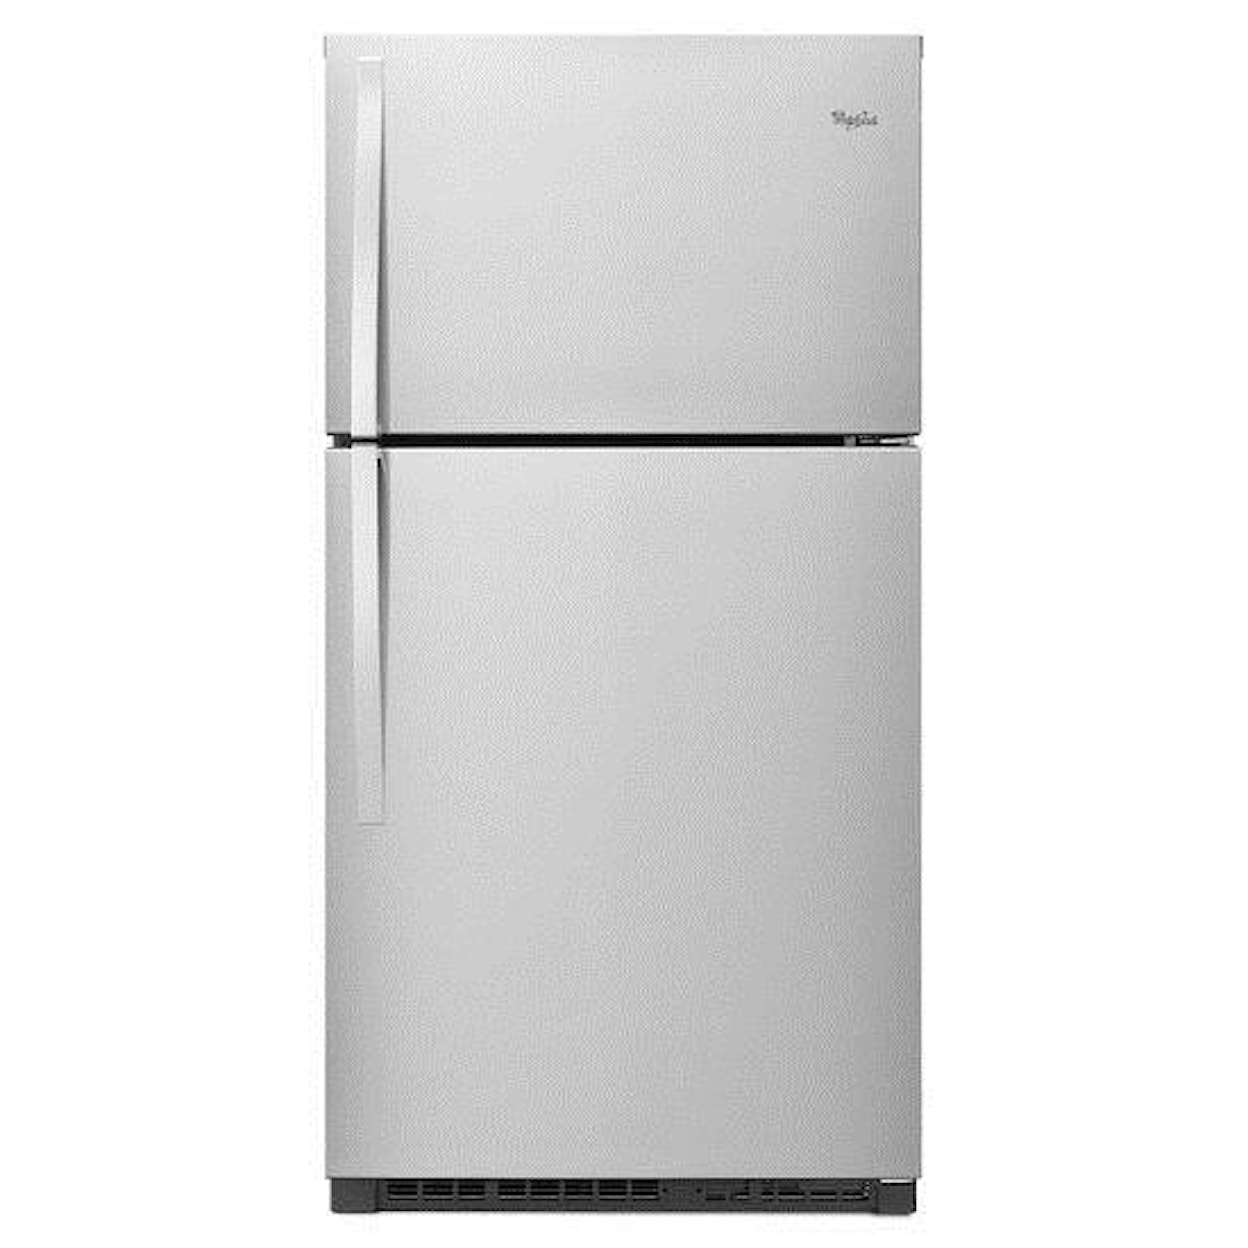 Whirlpool Top Mount Refrigerators 21.3 cu. ft., 33-In Top-Freezer Refrigerator